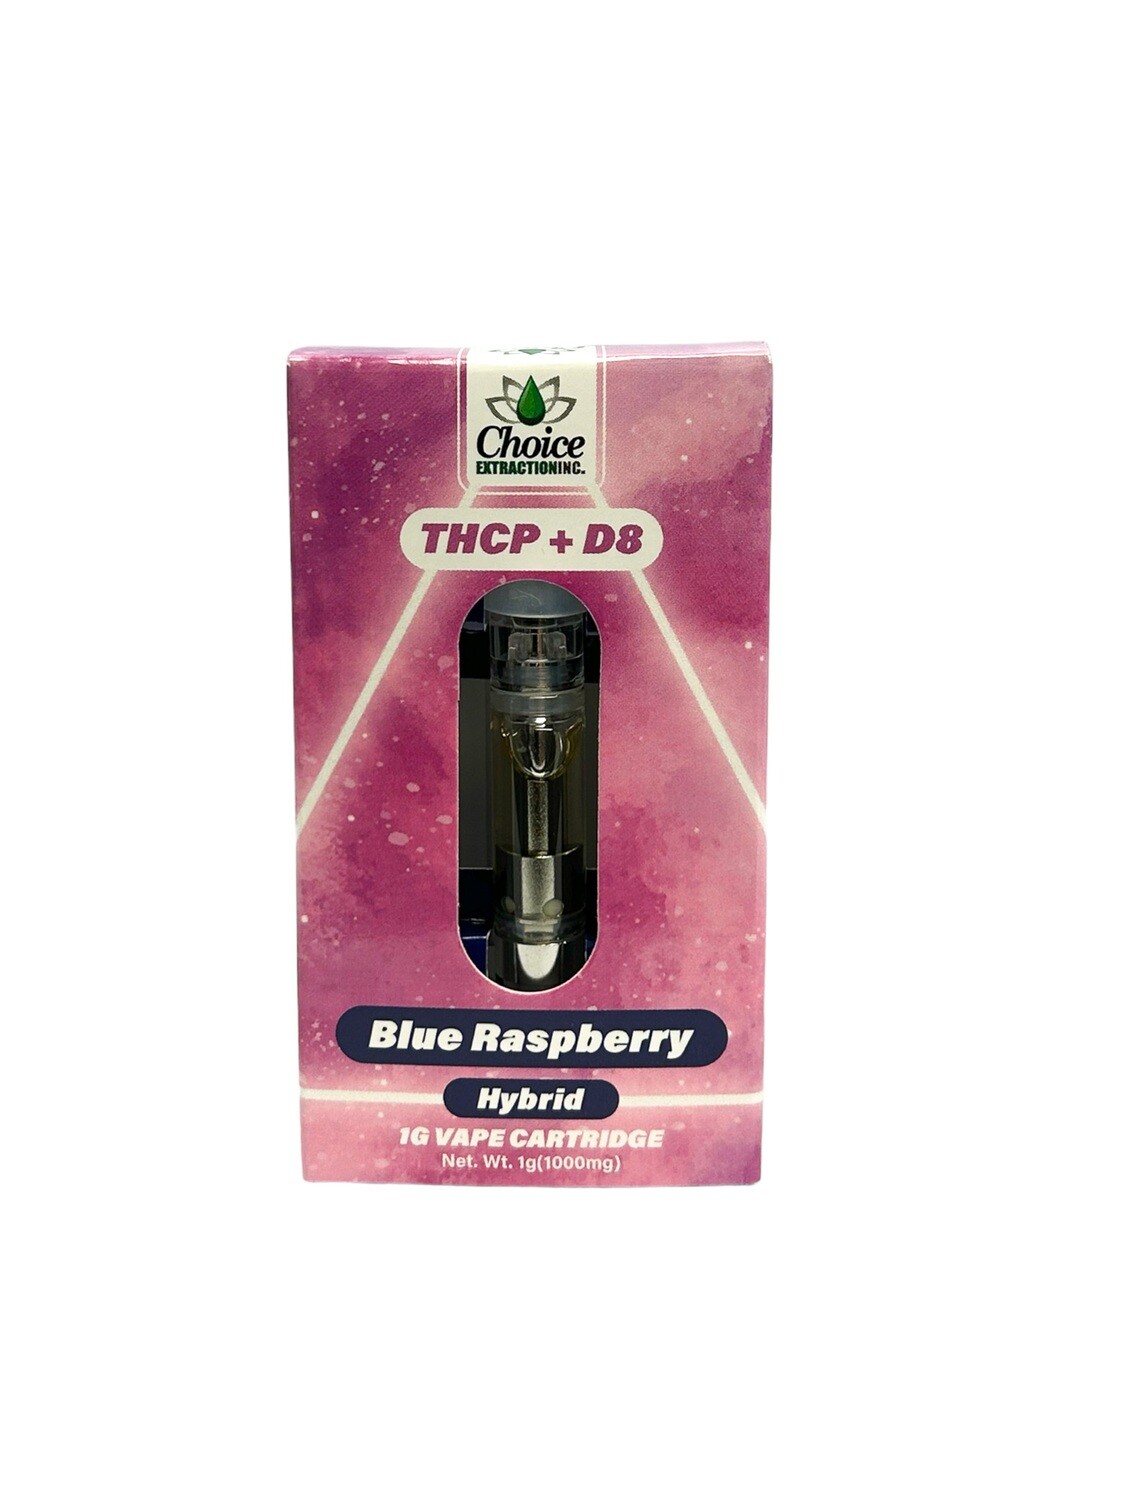 THCP + D8 Vape Cart - Blue Raspberry 1mL - Hybrid